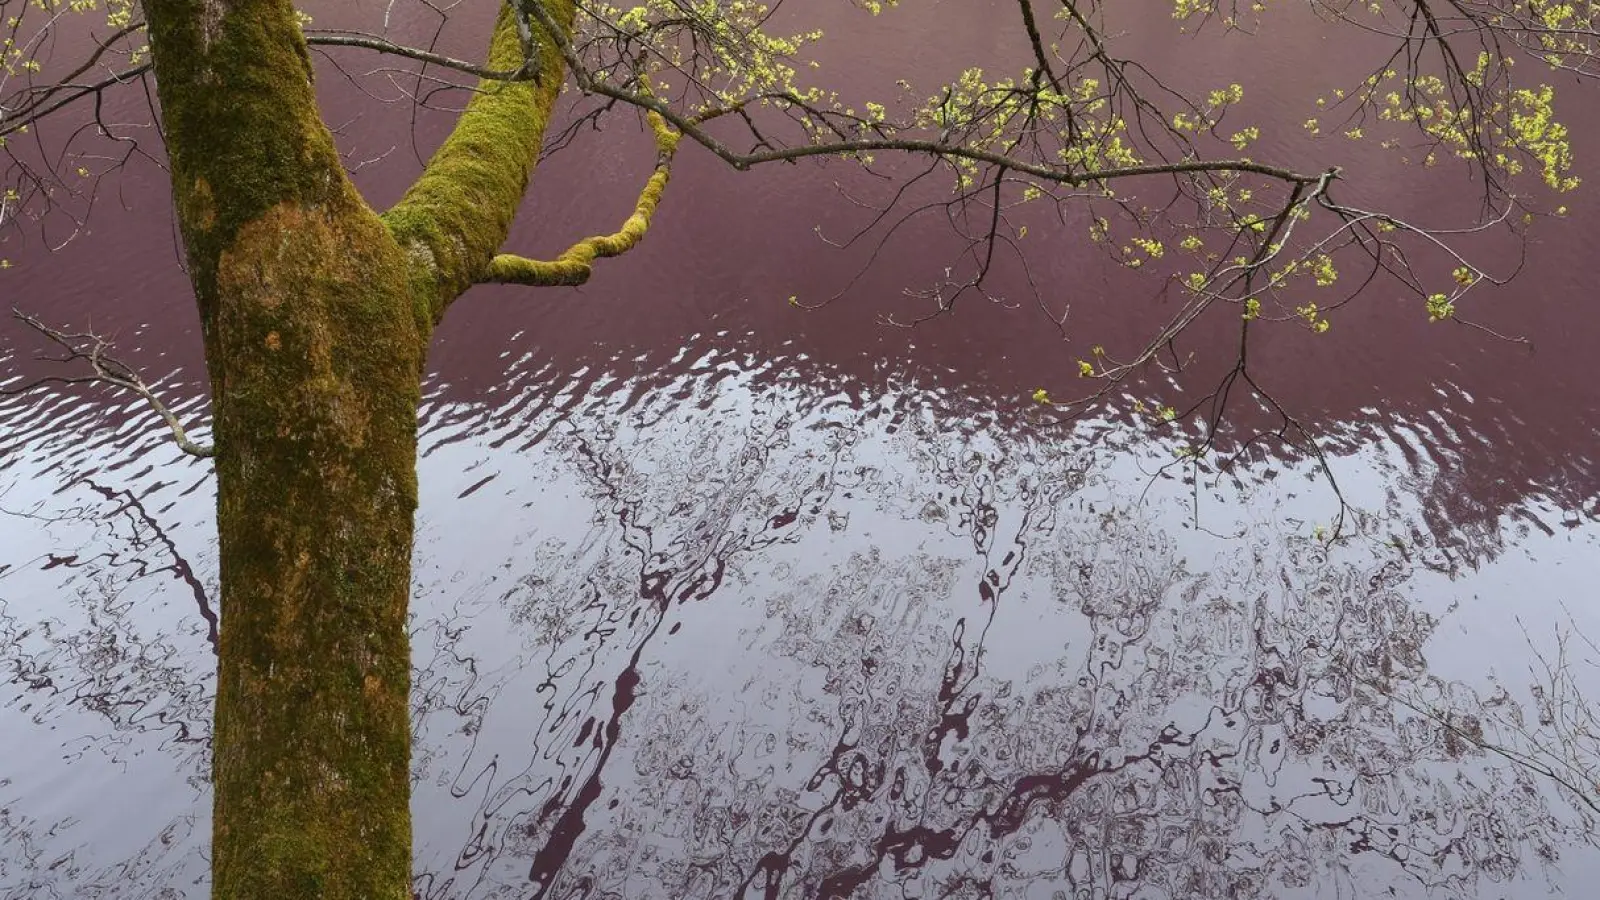 Lila gefärbt ist das Wasser des Gipsbruchweihers. (Foto: Karl-Josef Hildenbrand/dpa)